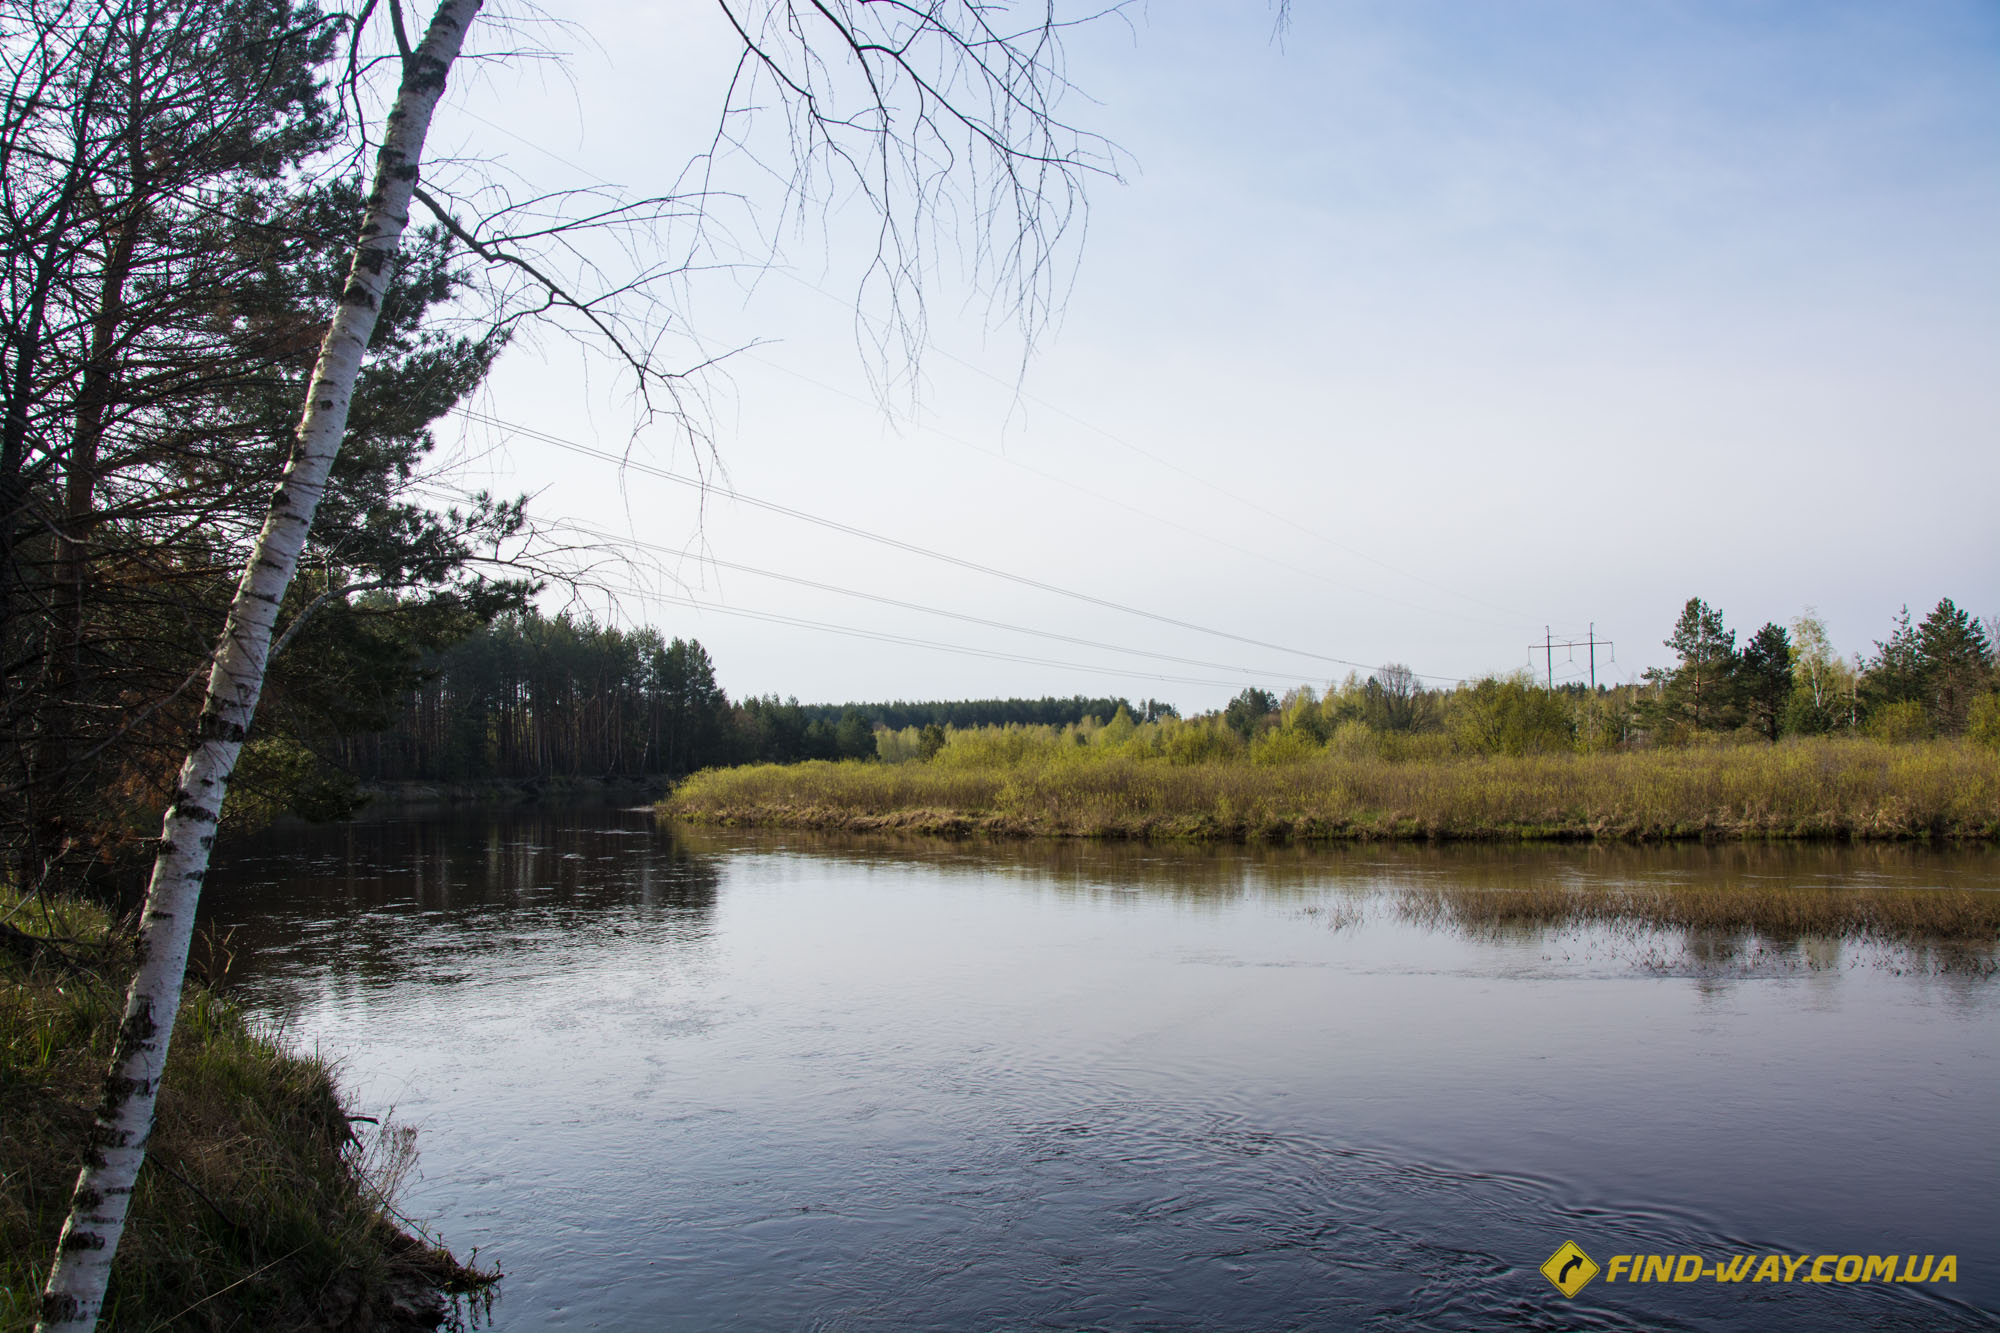  река уды в чернобыльской зоне отчуждения вброд через реку видео фото сталкеры в ЧЗО нелегально